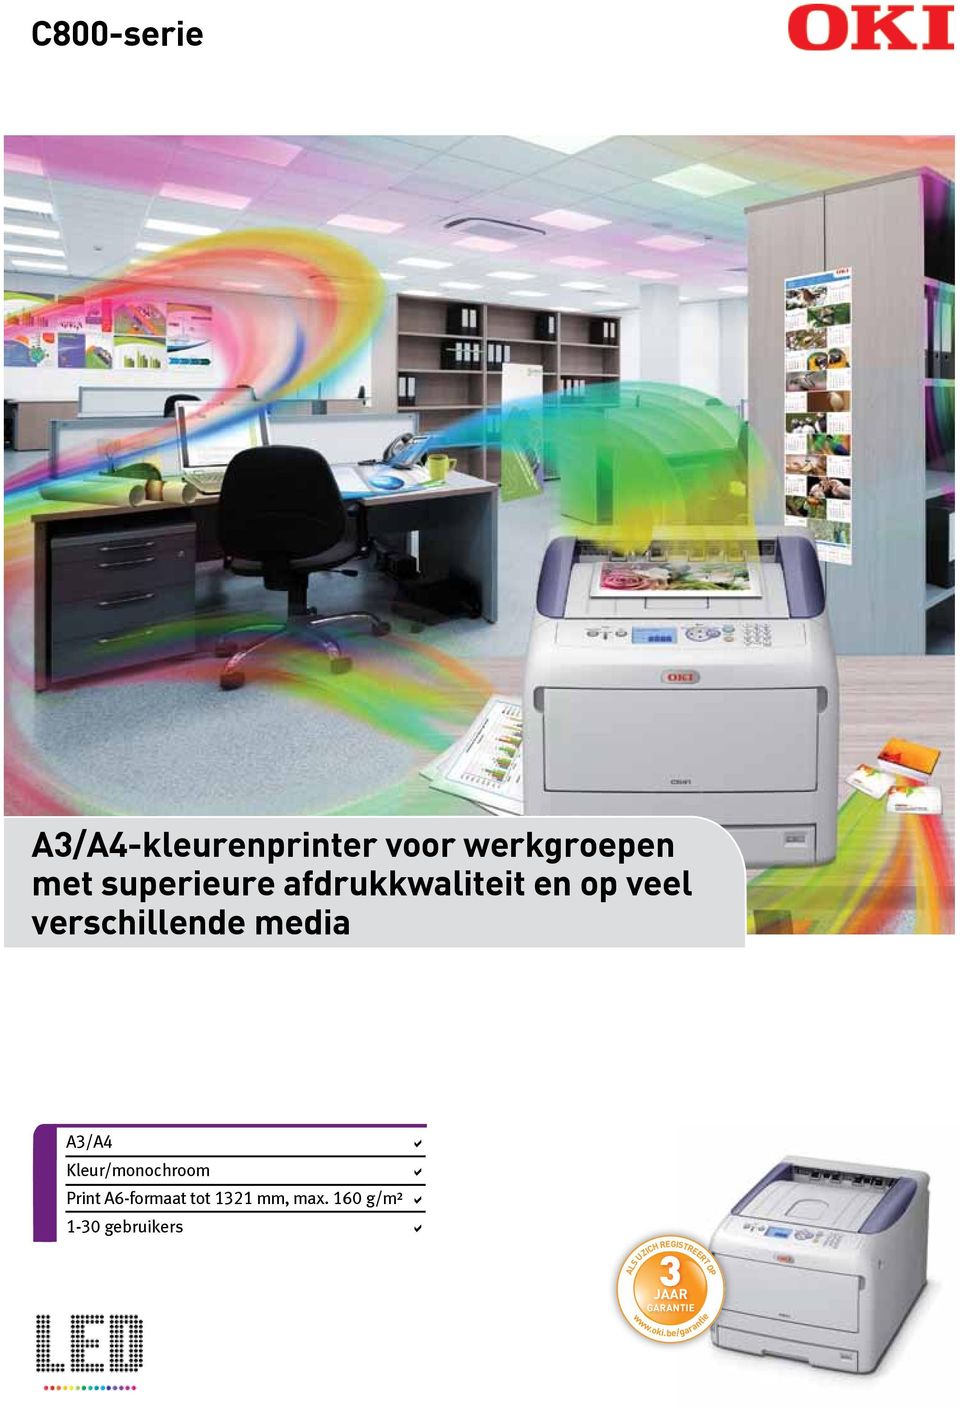 verschillende media A3/A4 a Kleur/monochroom a Print A6-formaat